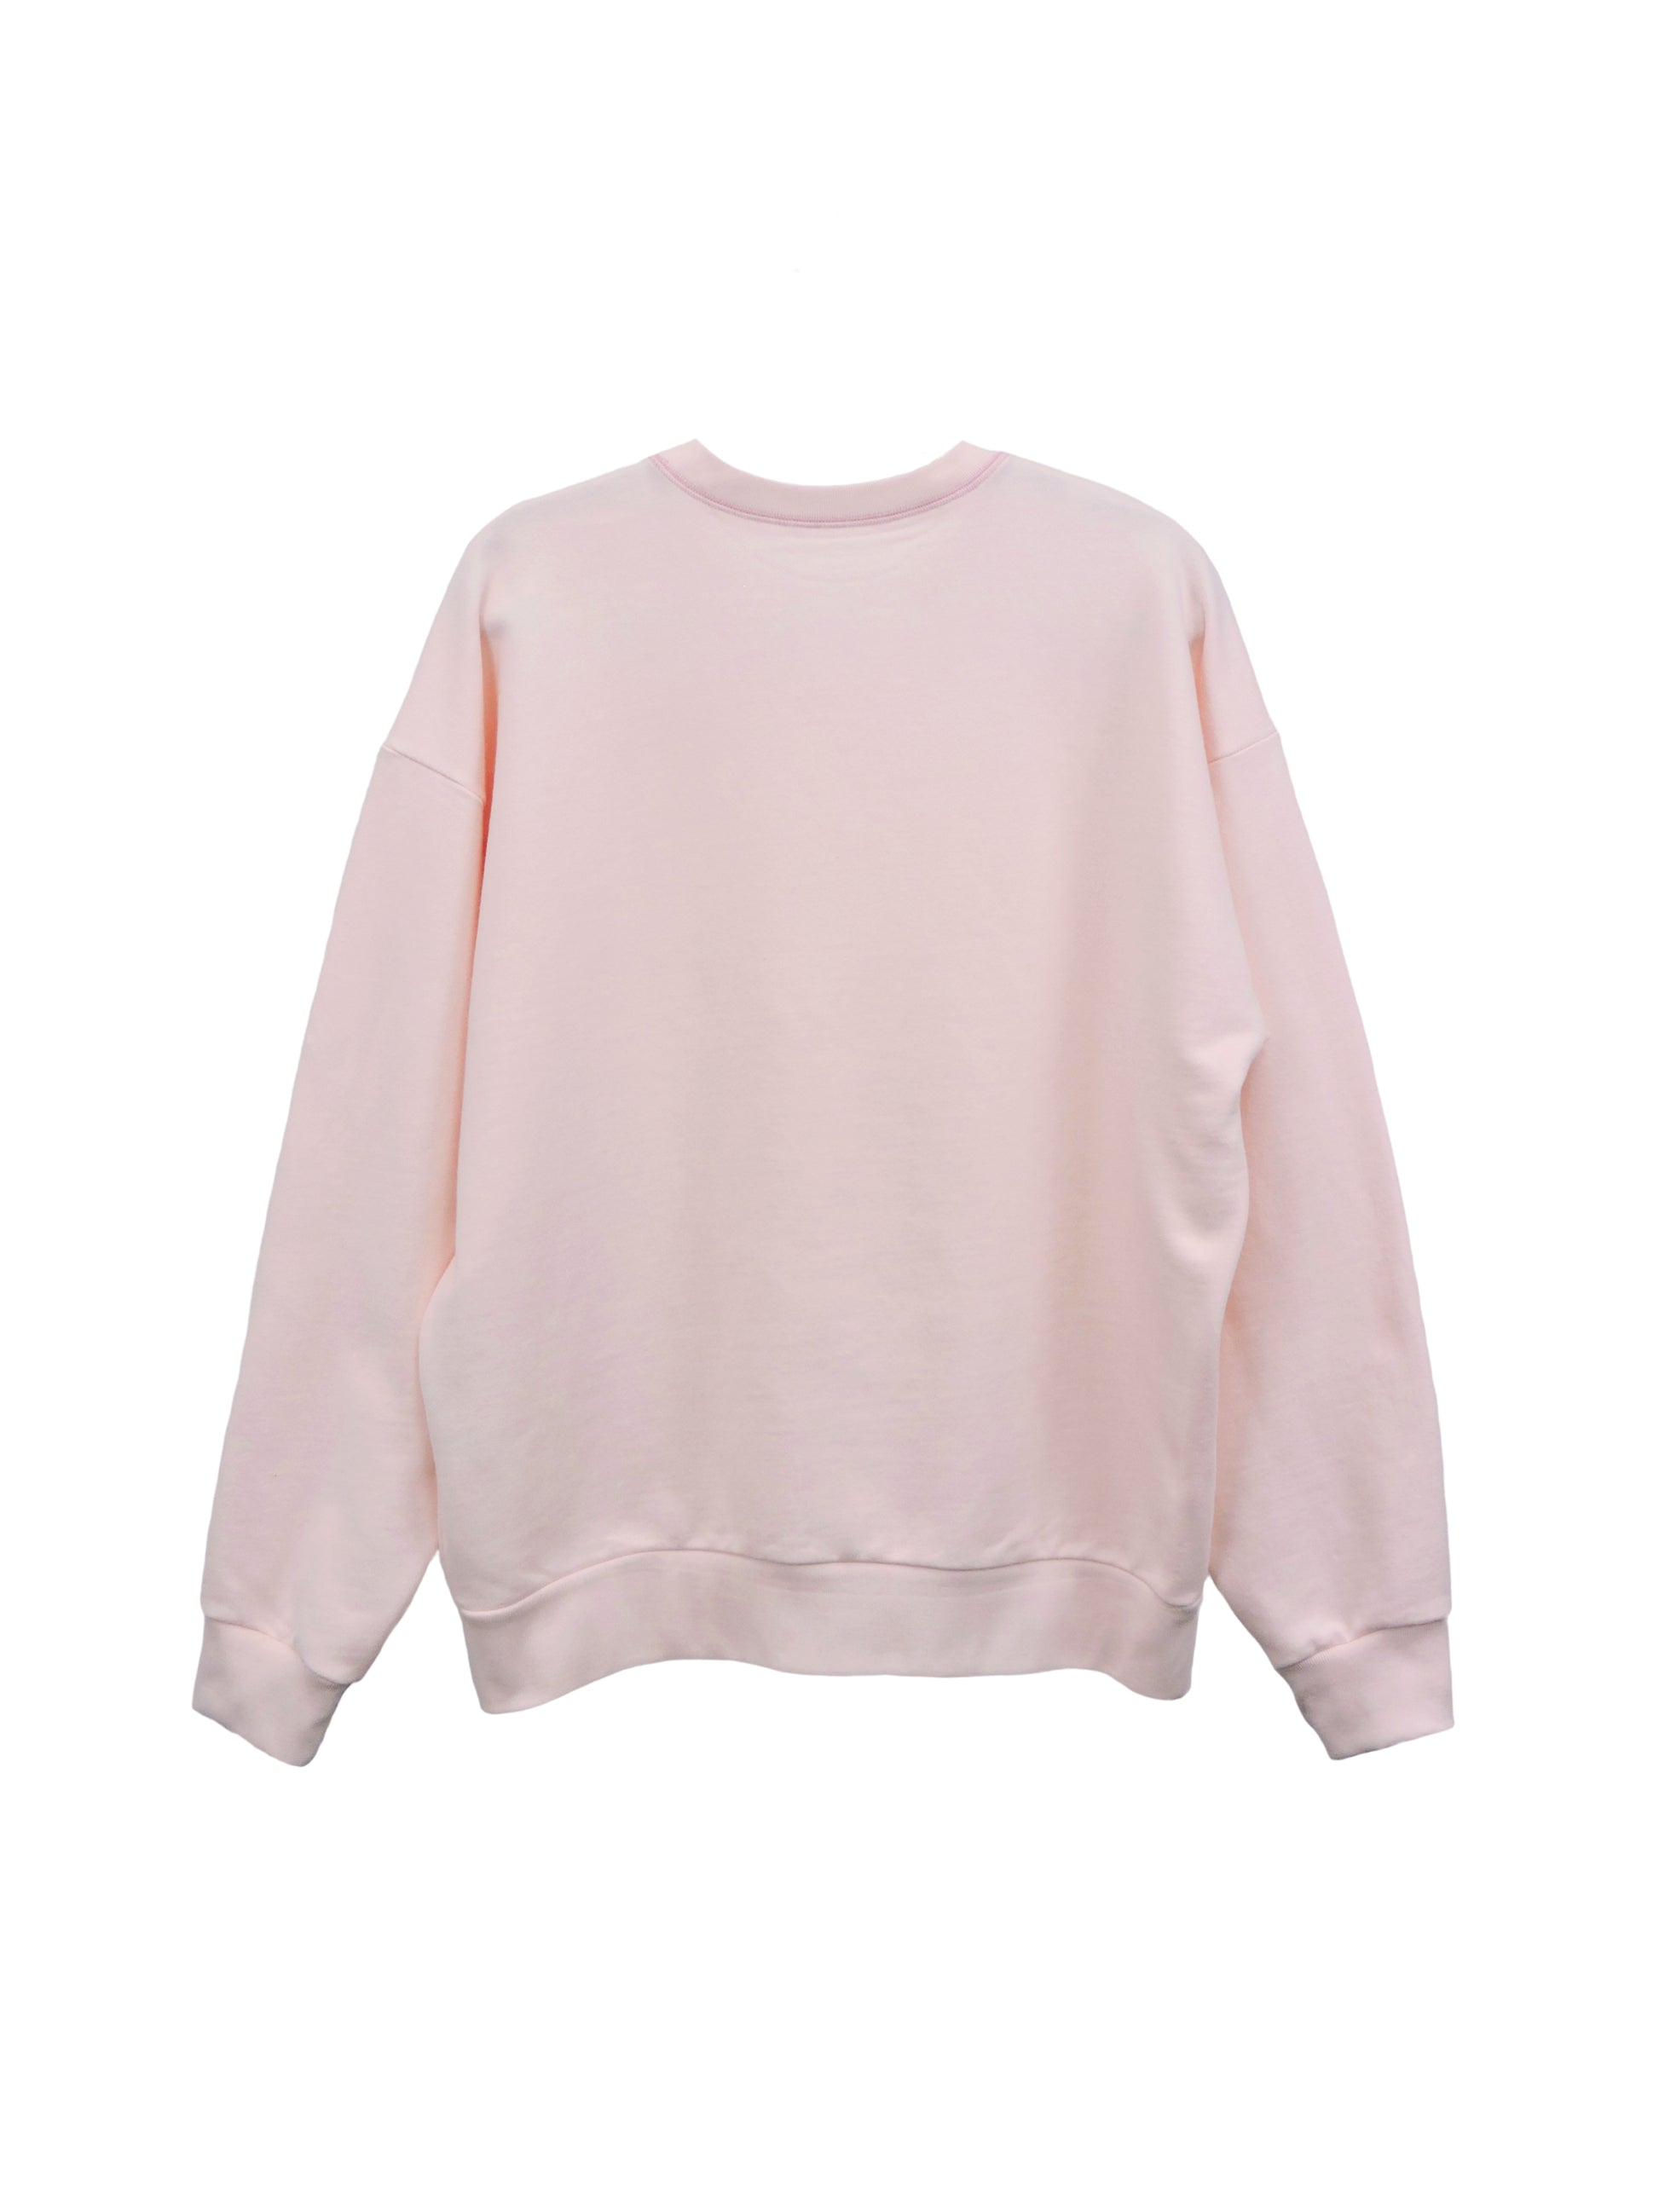 Light Pink Heavy Blend Fleece SweatSuit – BLANK KINGDOM